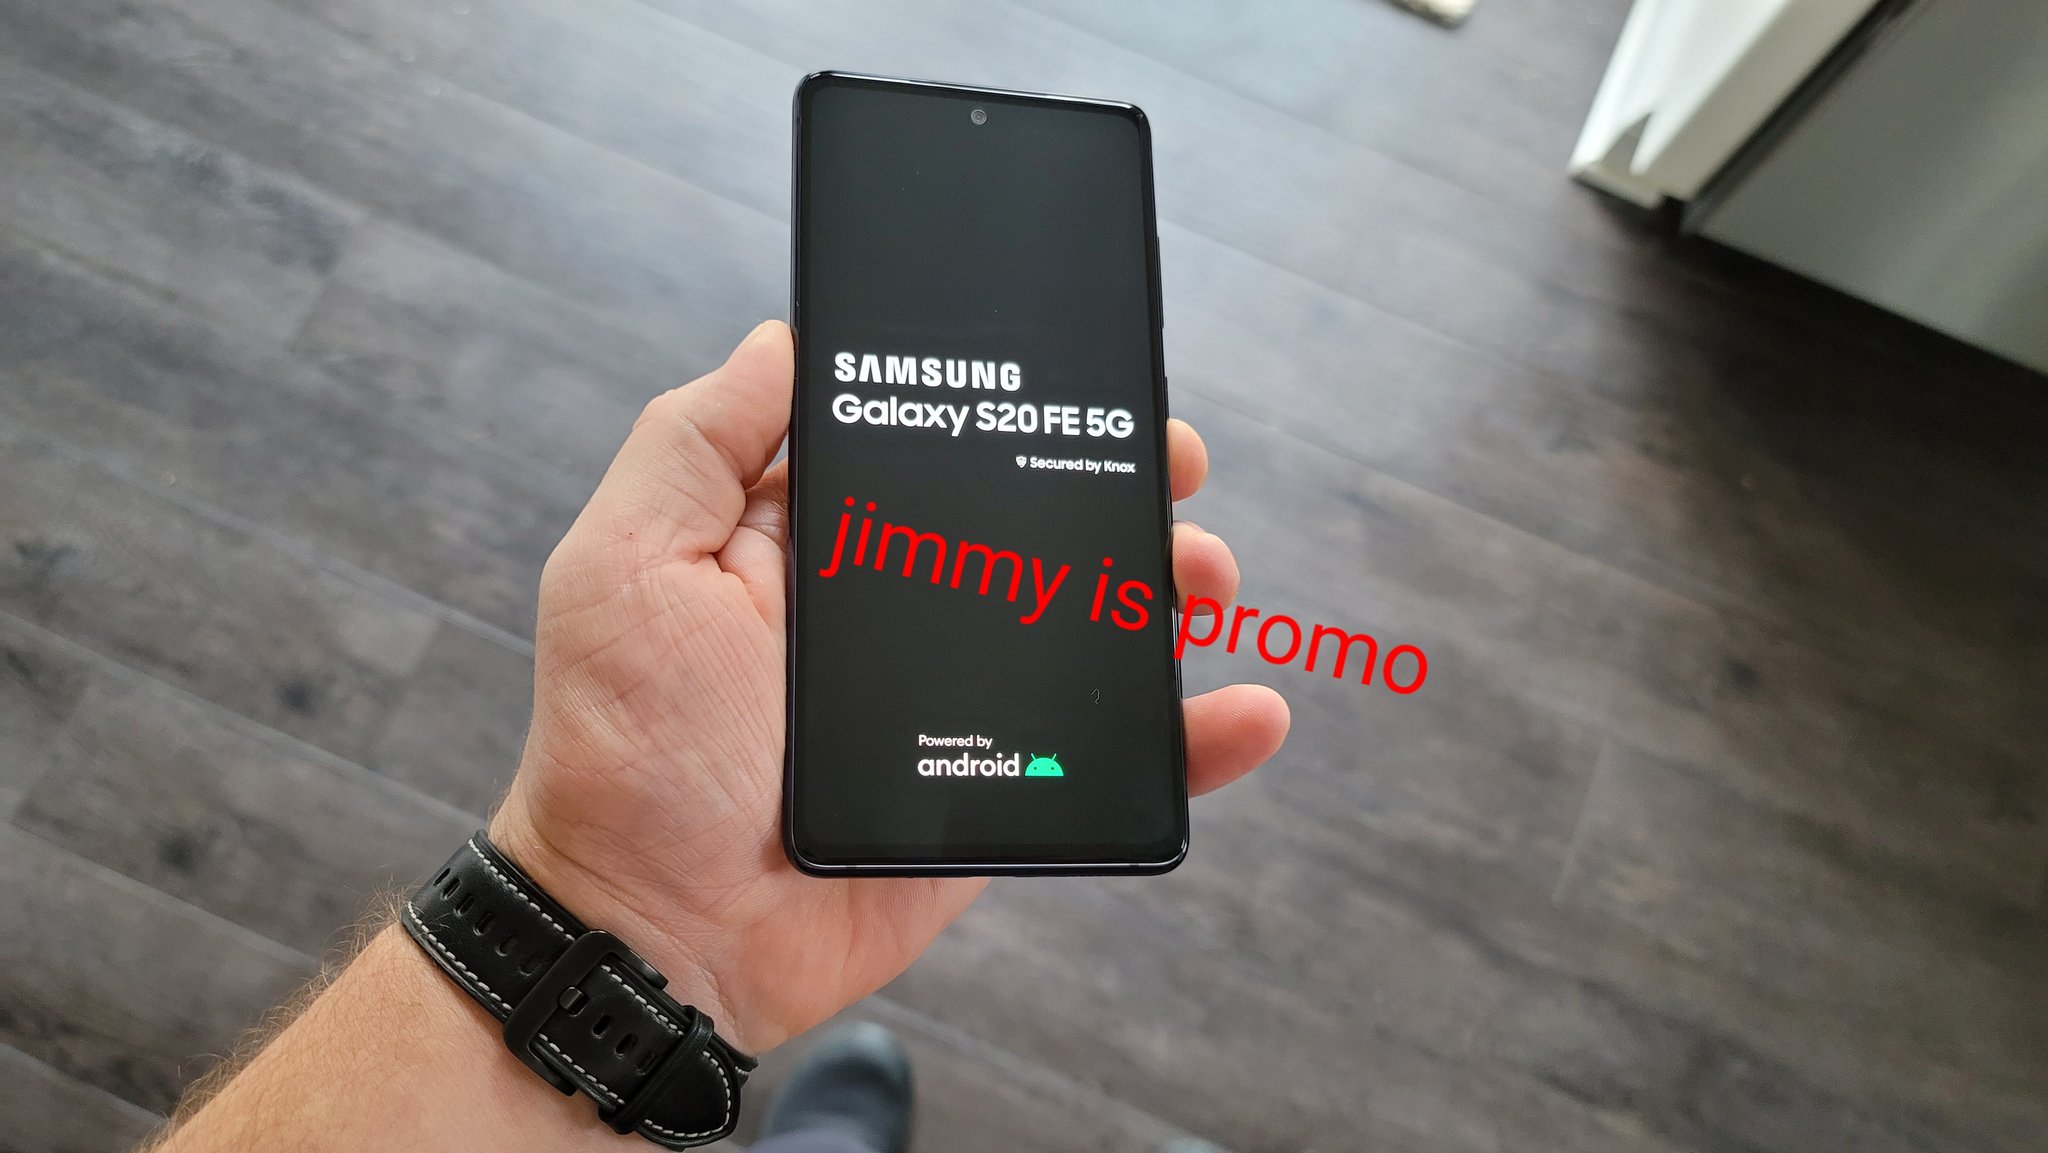 Samsung Galaxy S20 FE cena kiedy premiera zdjęcia specyfikacja dane techniczne